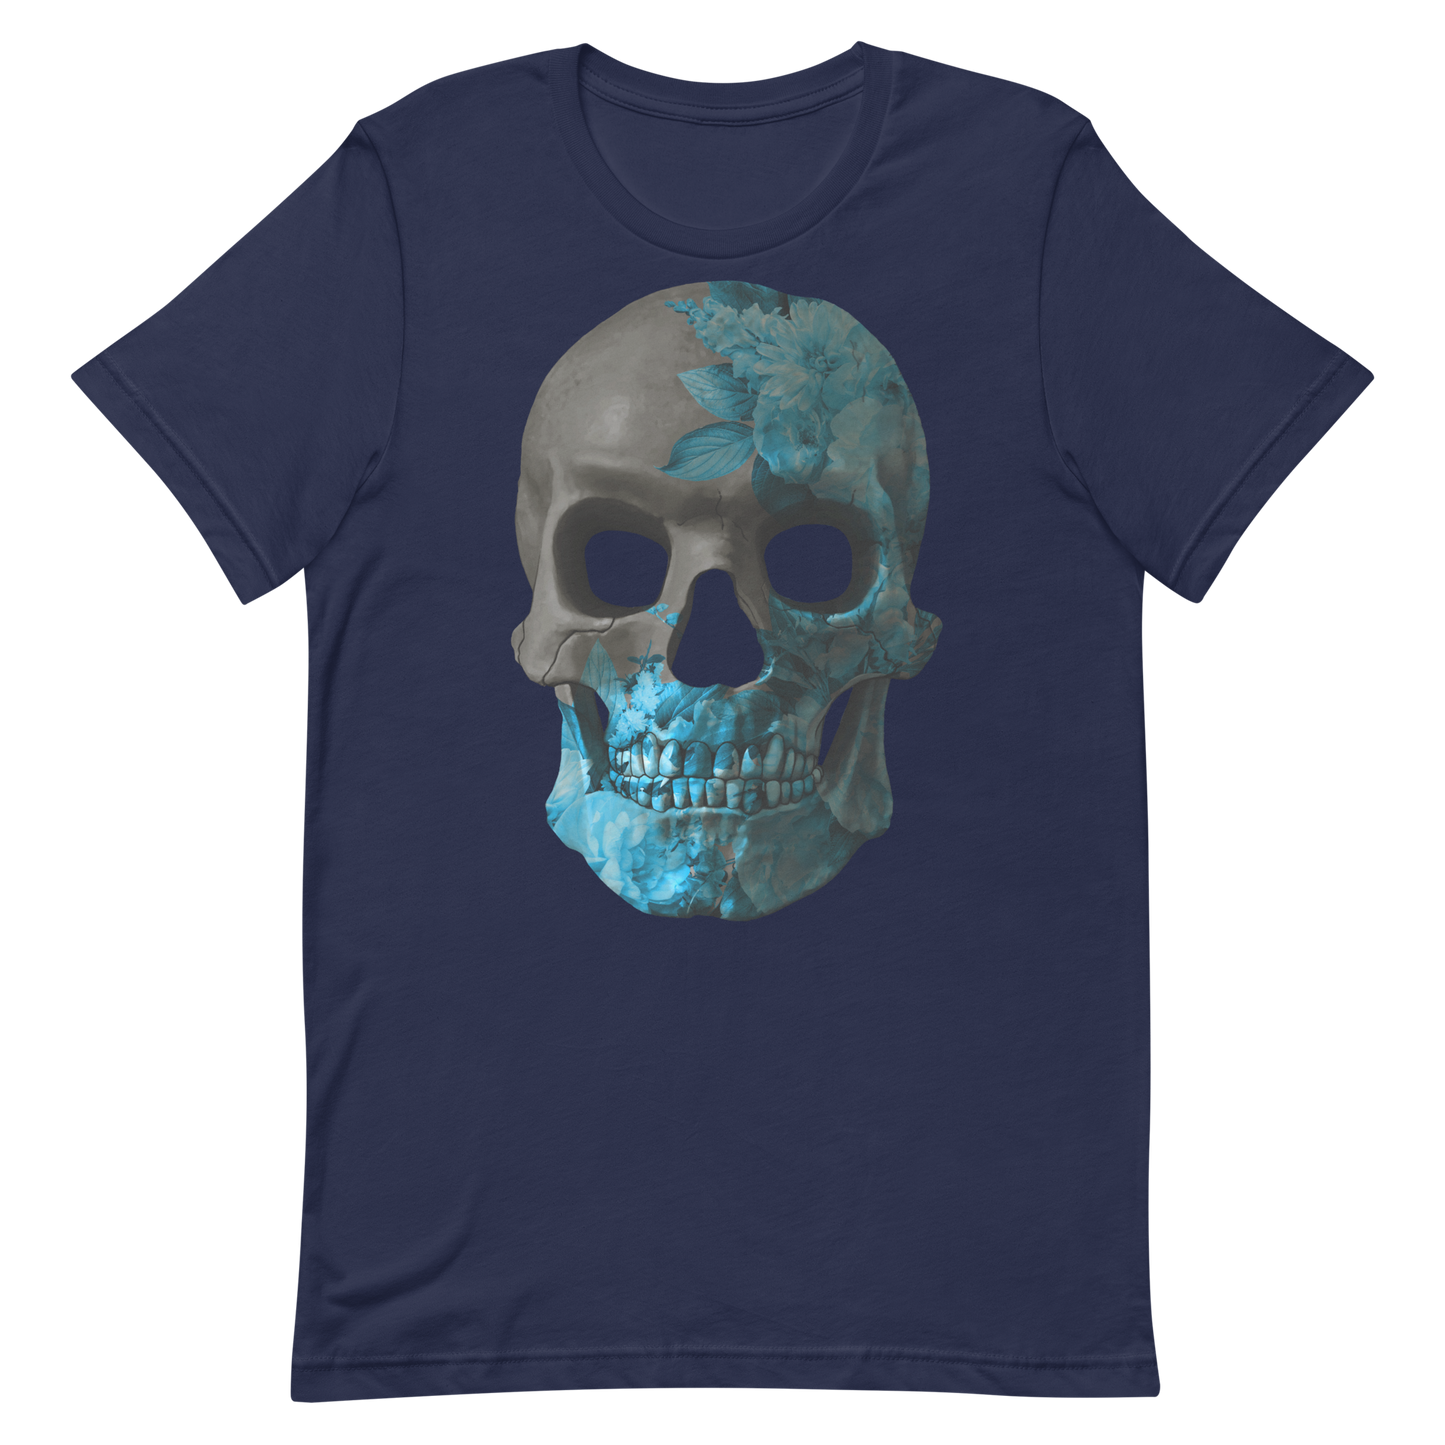 The Flower Skull motorcycle t-shirt 050